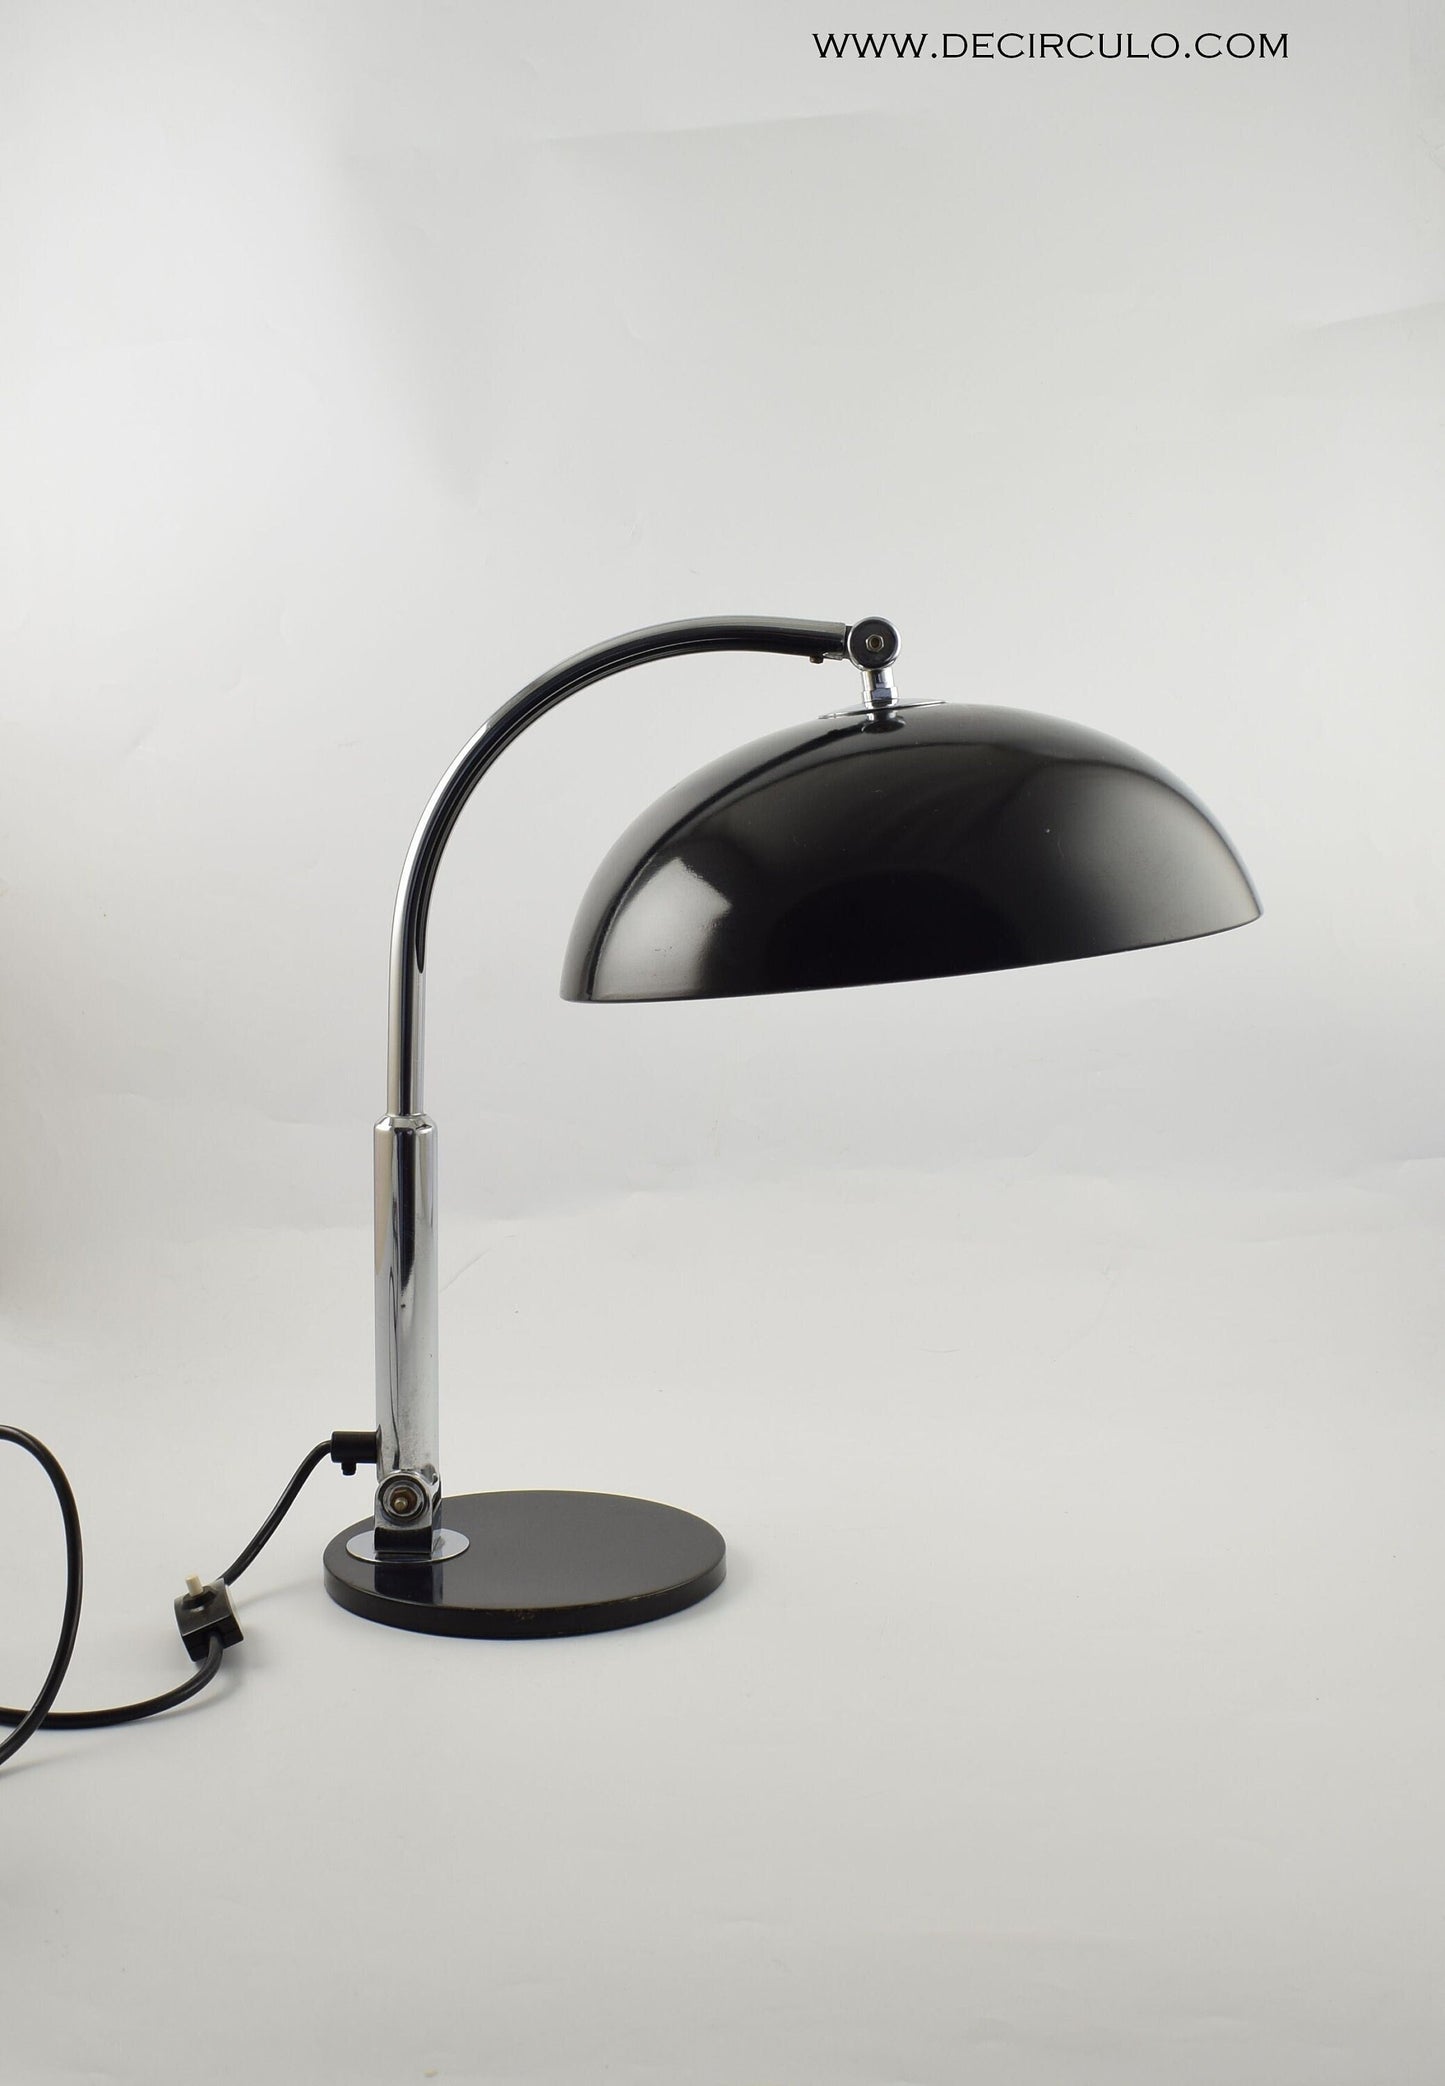 Lámpara de escritorio Hala Modelo 144 diseñada por Busquet, famosa lámpara de mesa de diseño en negro y cromo de los Países Bajos